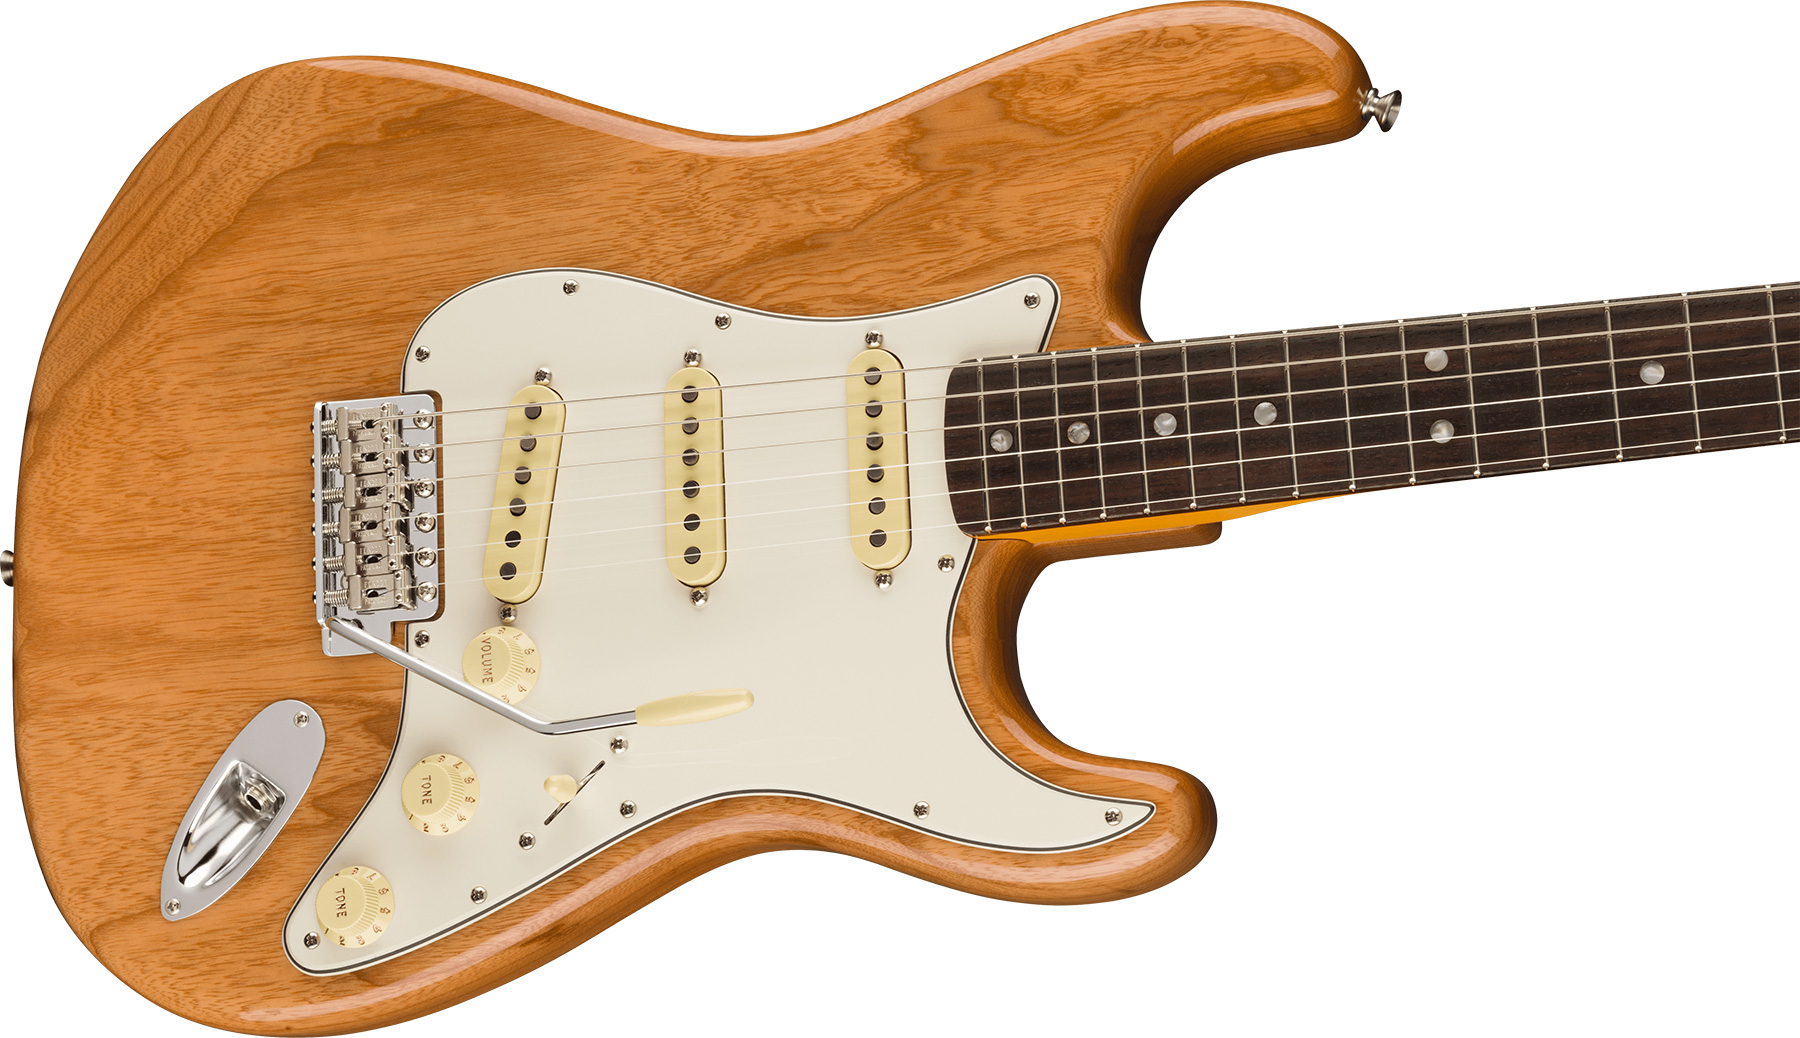 Fender Strat 1973 American Vintage Ii Usa 3s Trem Rw - Aged Natural - Str shape electric guitar - Variation 2